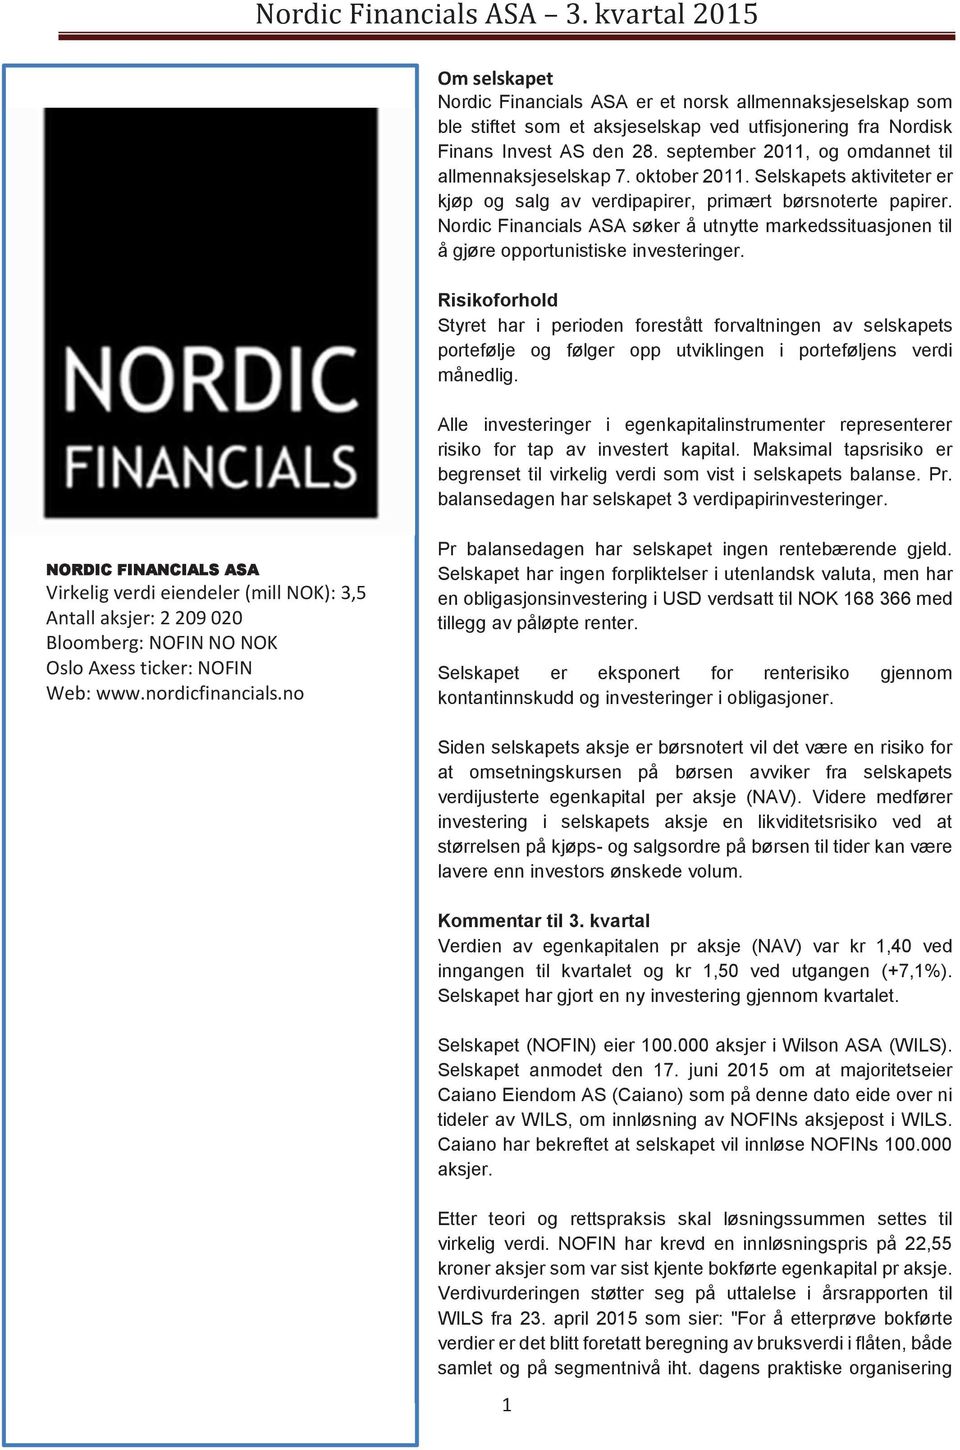 Nordic Financials ASA søker å utnytte markedssituasjonen til å gjøre opportunistiske investeringer.